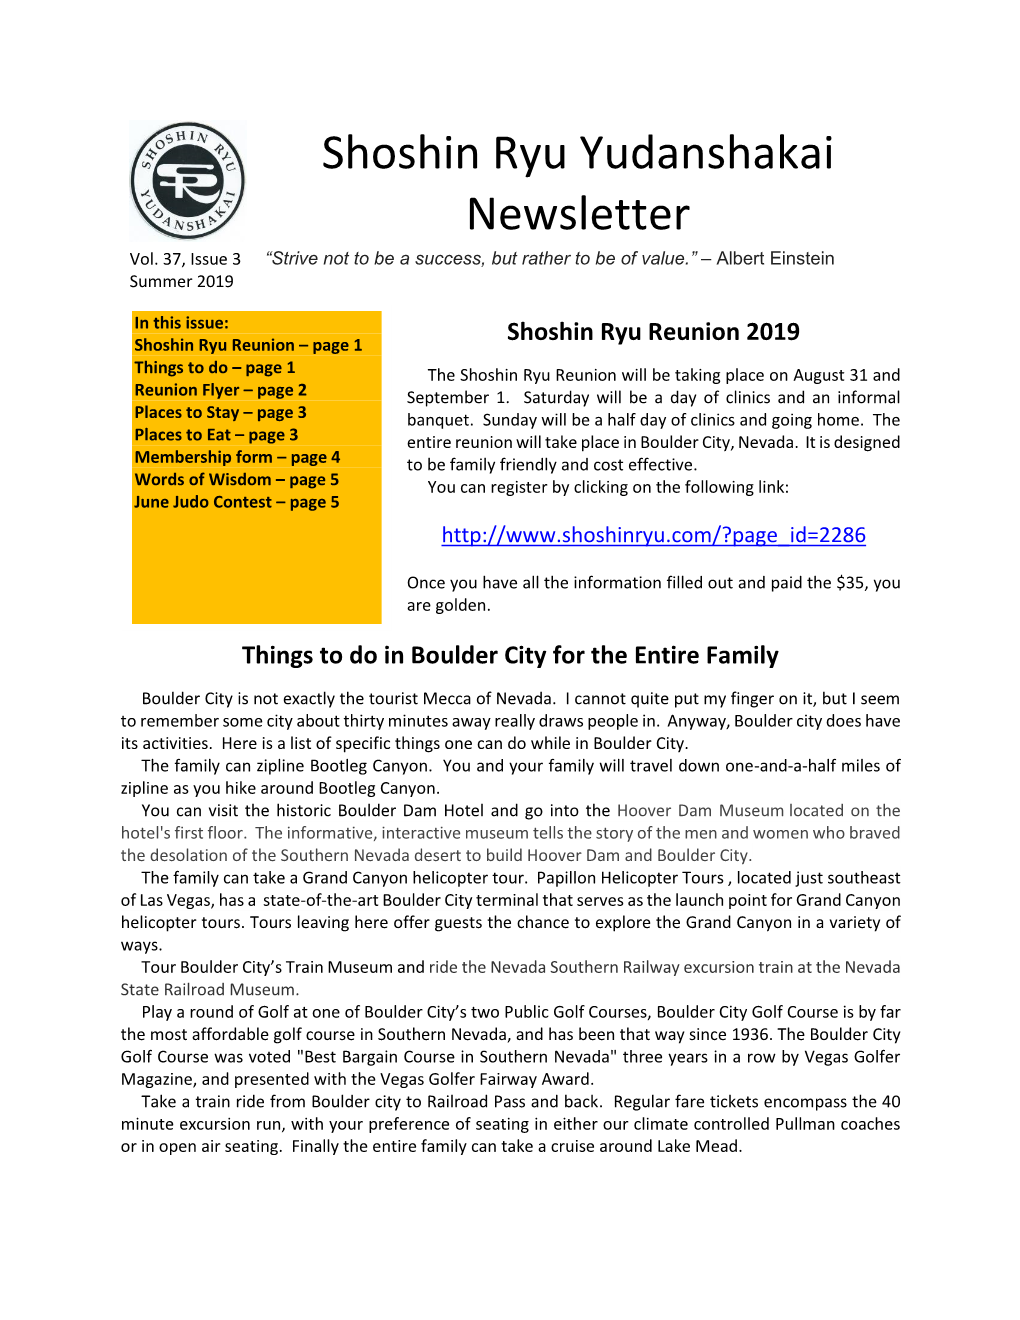 Shoshin Ryu Yudanshakai Newsletter Page 2 Summer 2019